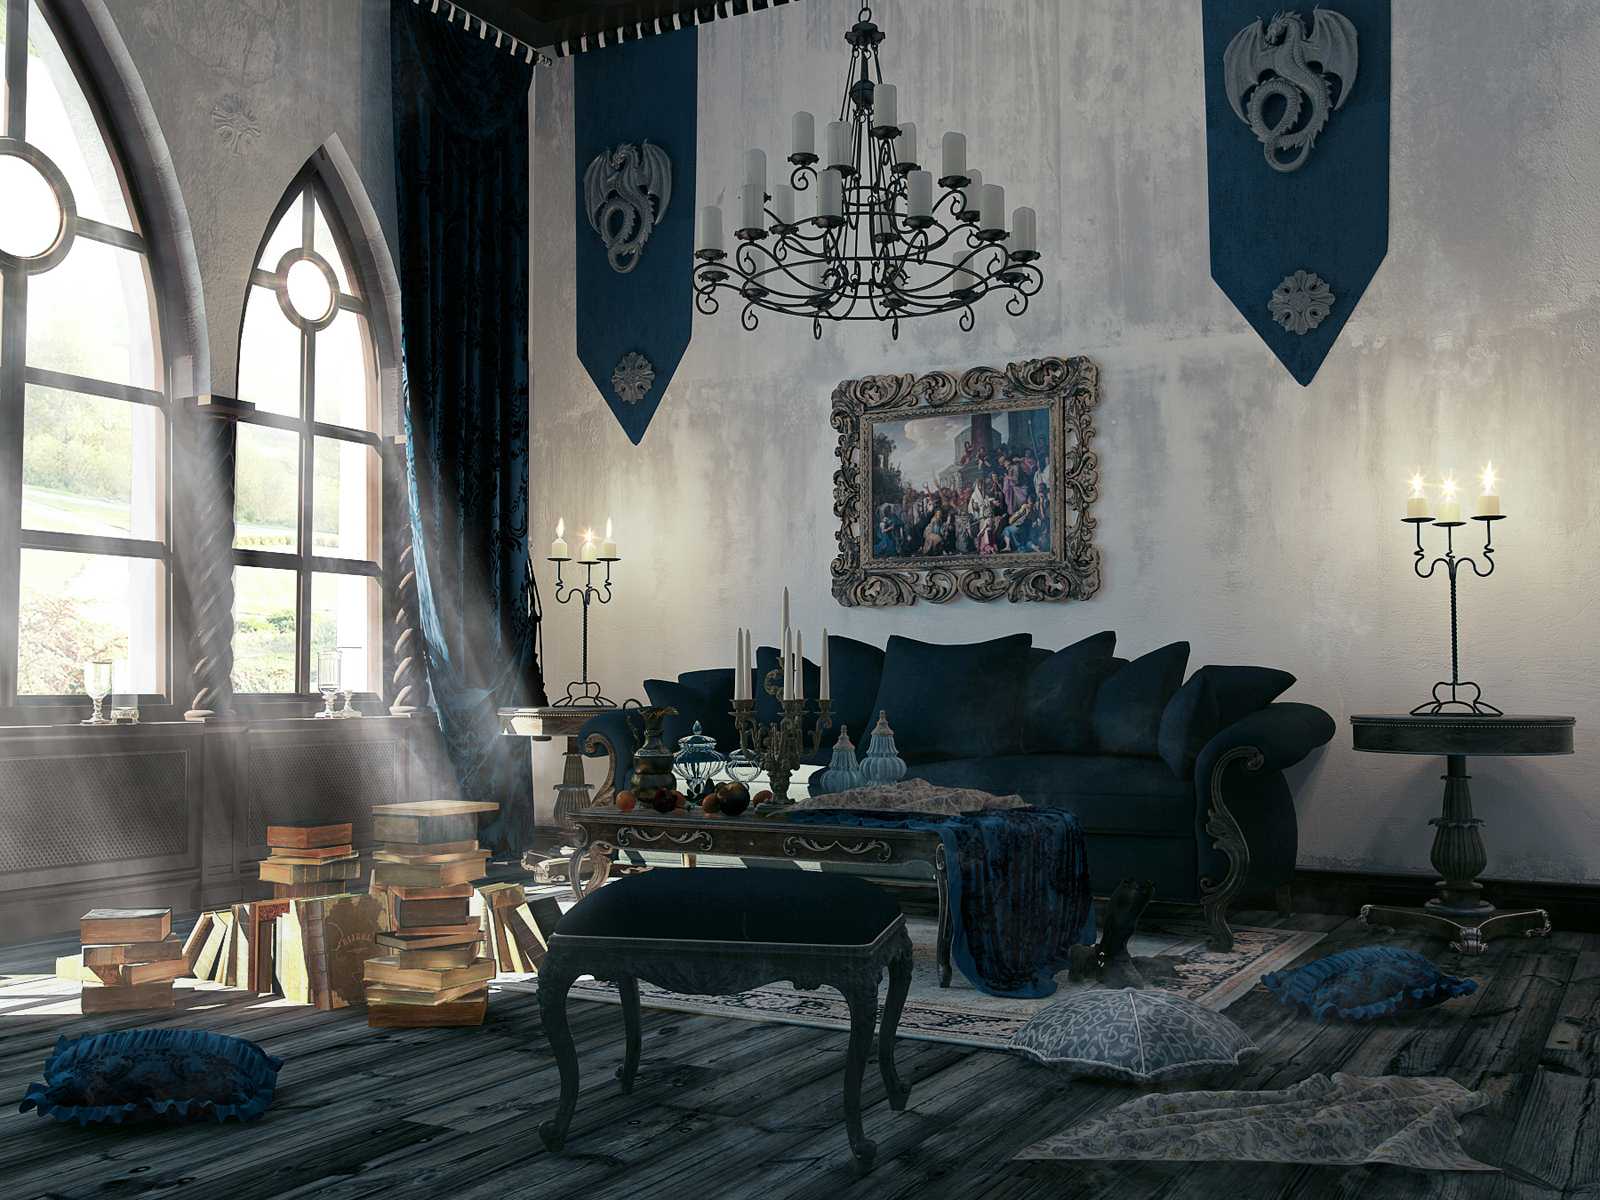 šviesaus stiliaus kambarys gotikos stiliumi